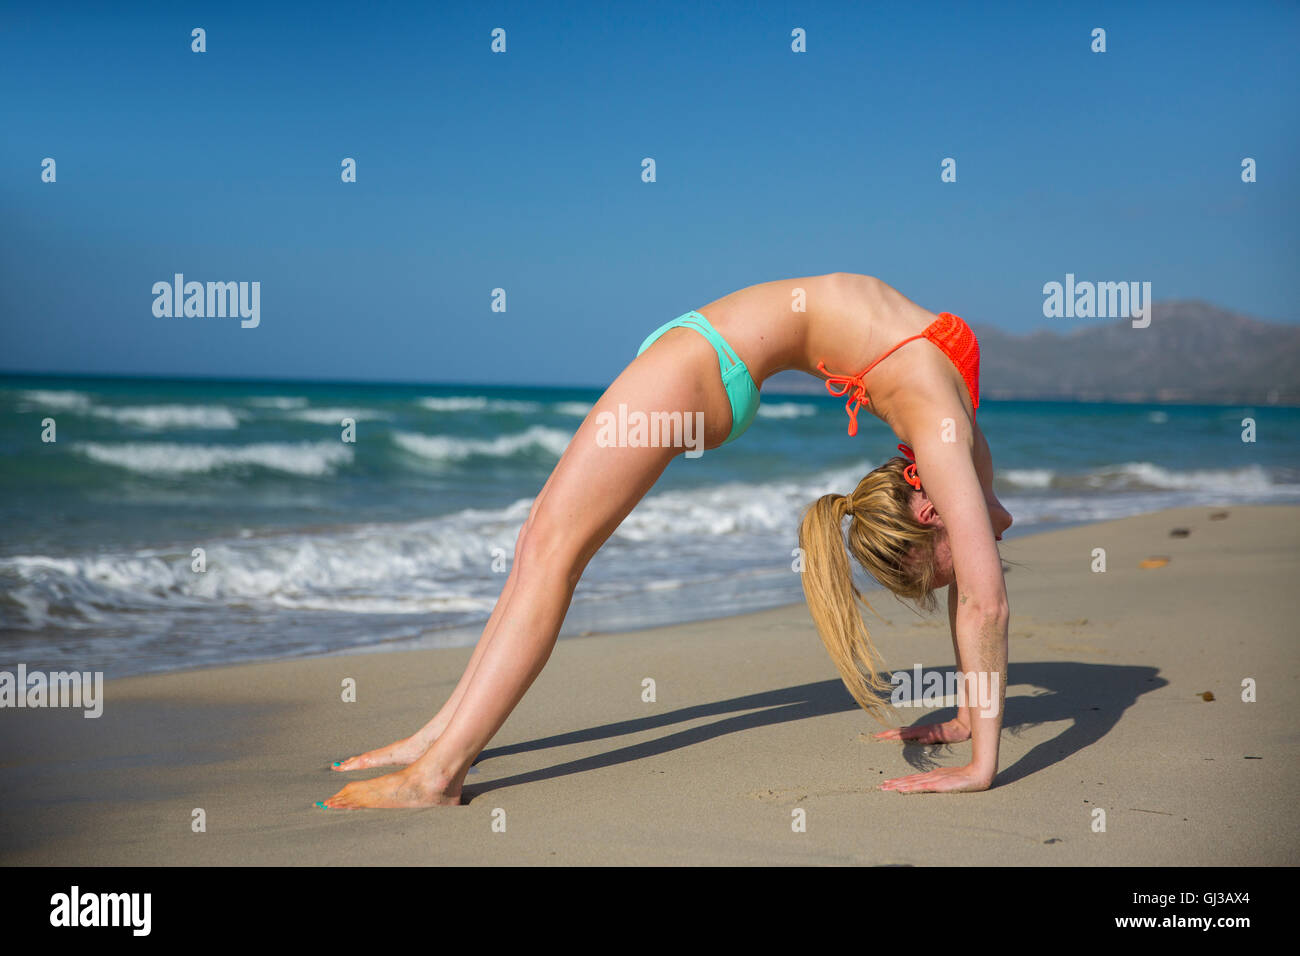 Junge Frau am Strand, Sport, riss sich ein Bein Stockfoto